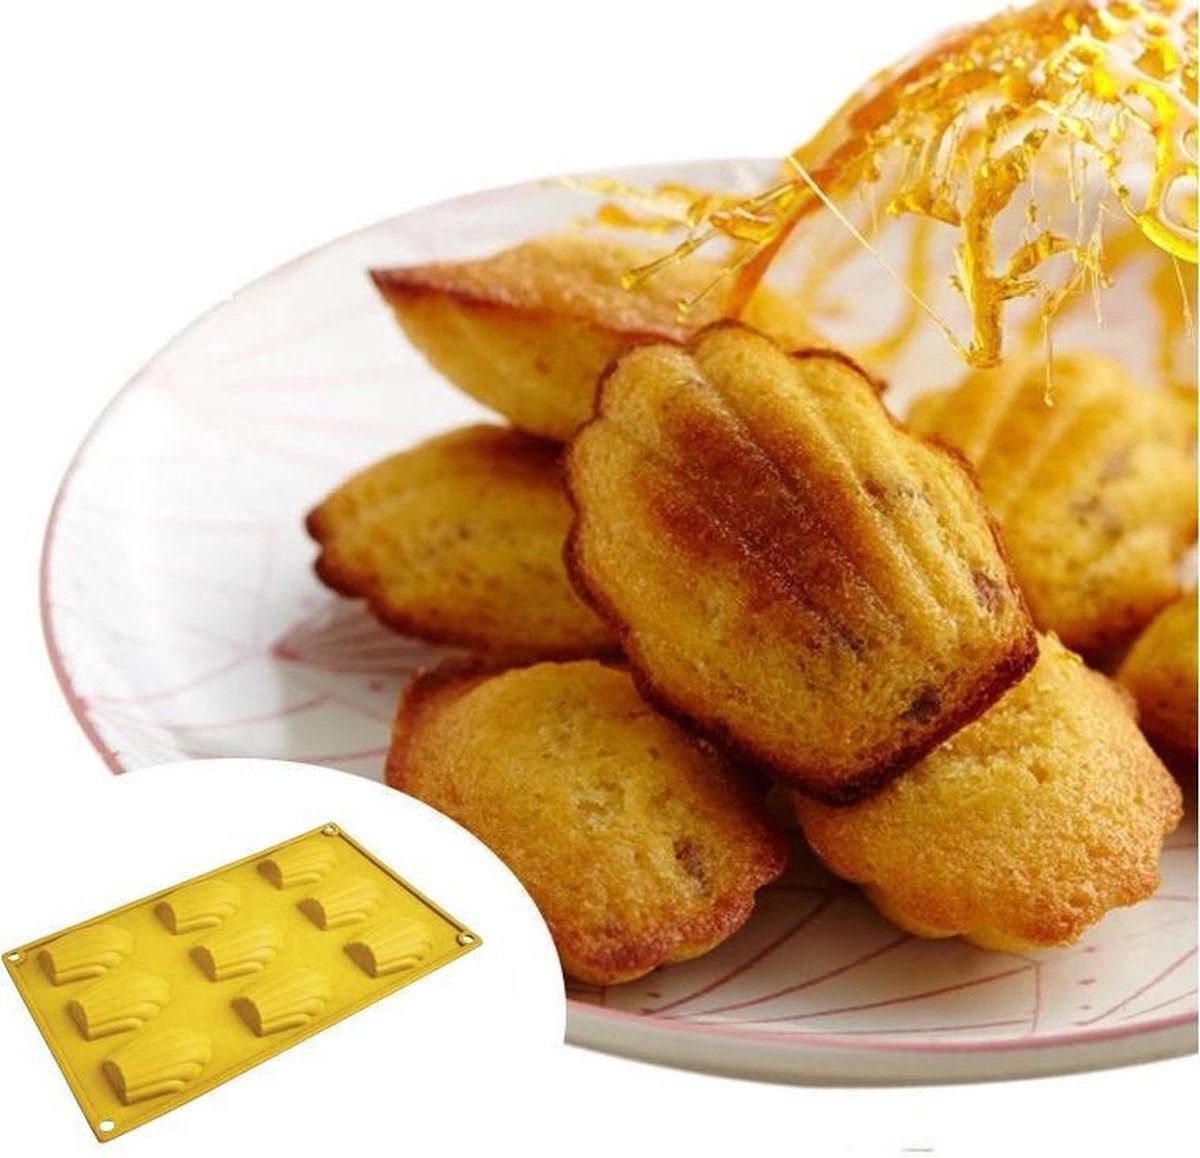 Siliconen Madeleine bakvorm - ZijTak - antikleef - 9 madeleinen - ware grootte - bakvorm - plooibaar - duurzaam - vorm - herbruikbaar - dessert - toetjes - bak - bakken - cake - taart - gratis verzending - Fleurig Geel